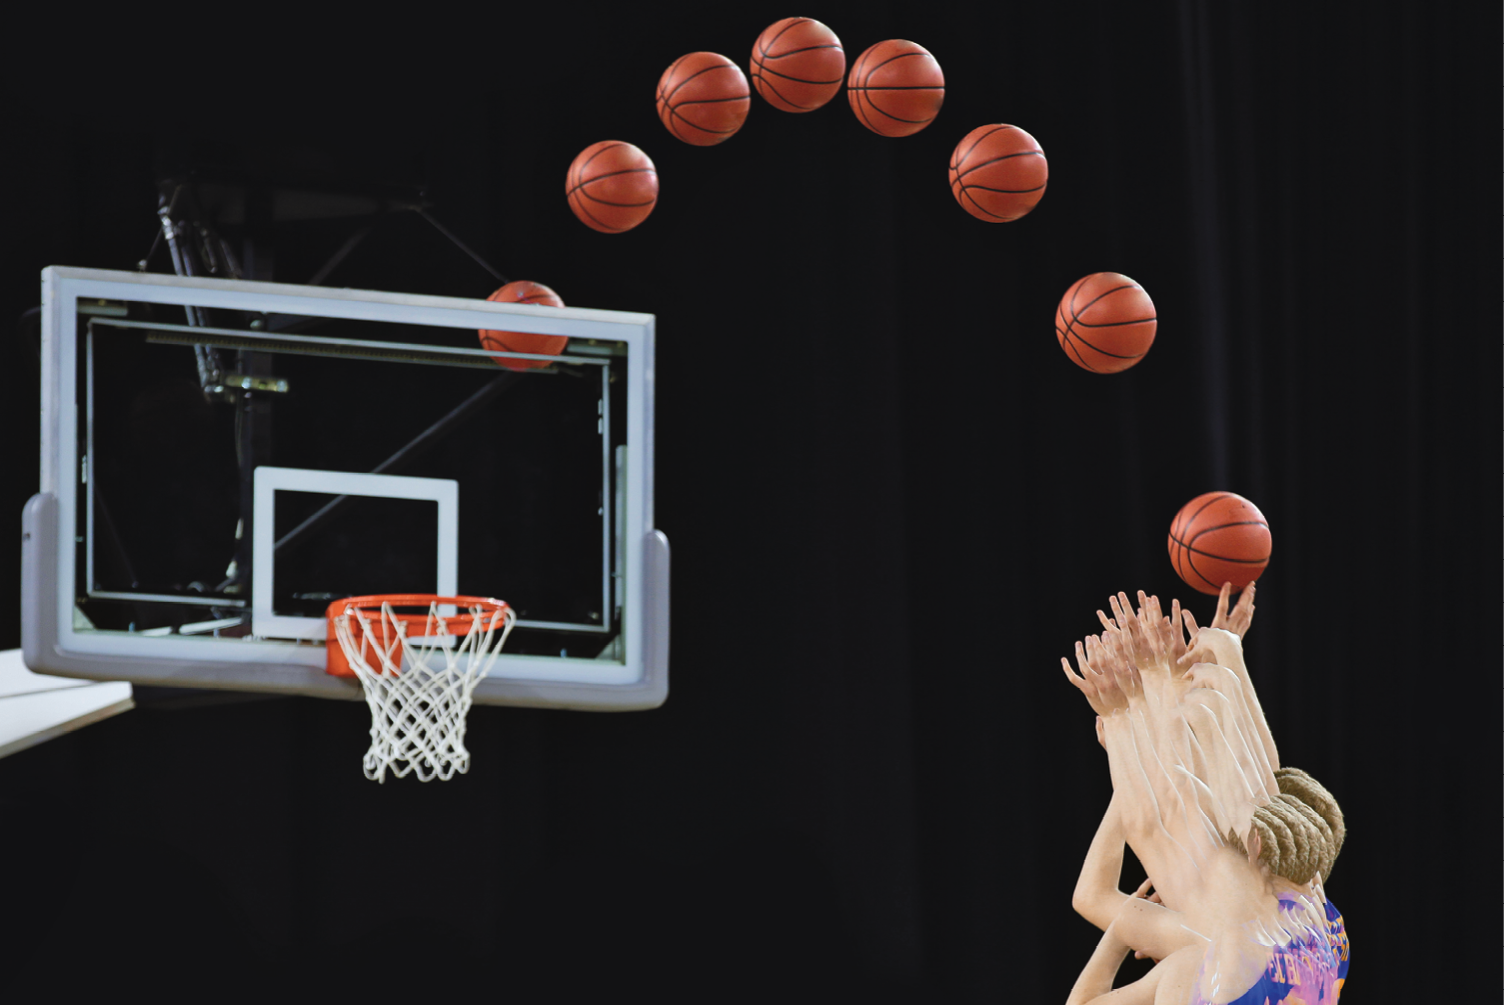 Fotografia. Destaque para as mãos de uma pessoa que lança uma bola de basquete em direção à cesta. A trajetória percorrida pela bola até chegar na cesta é registrada de tempo em tempo, formando uma parábola.